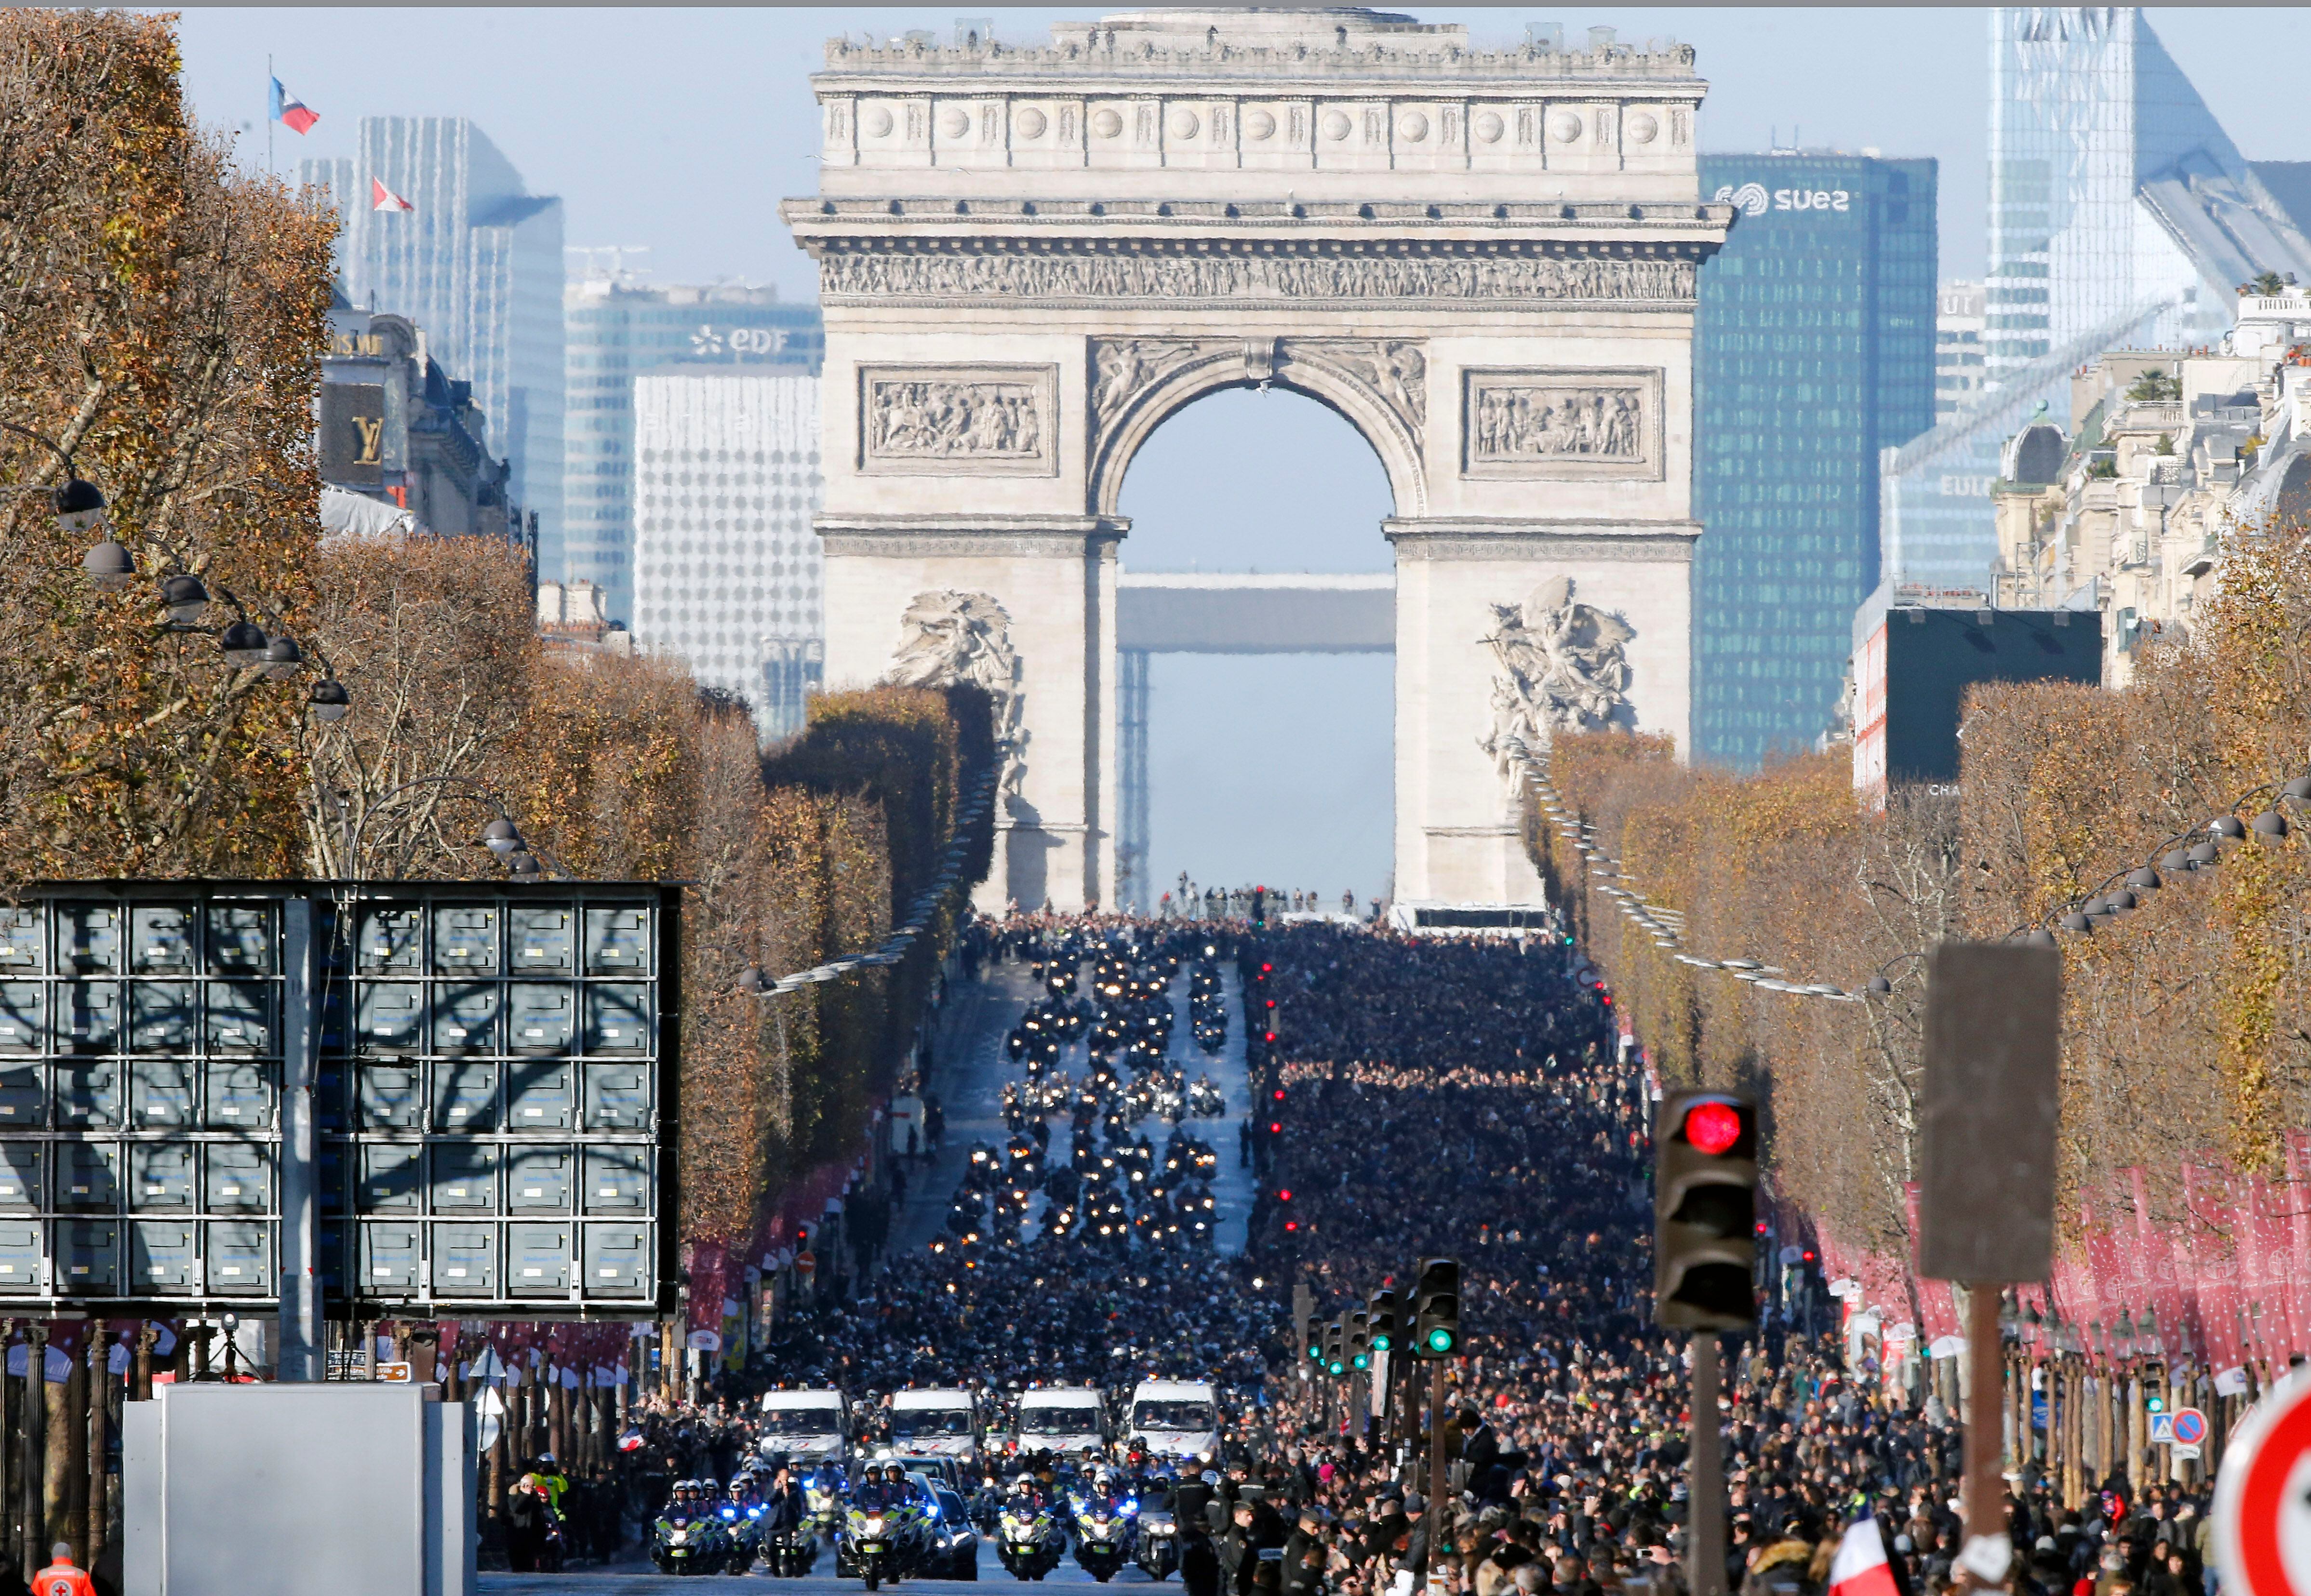 Los Campos Elíseos de París reunieron a cientoos de miles de personas en el funeral de Johnny Hallyday el 9 de diciembre de 2017.